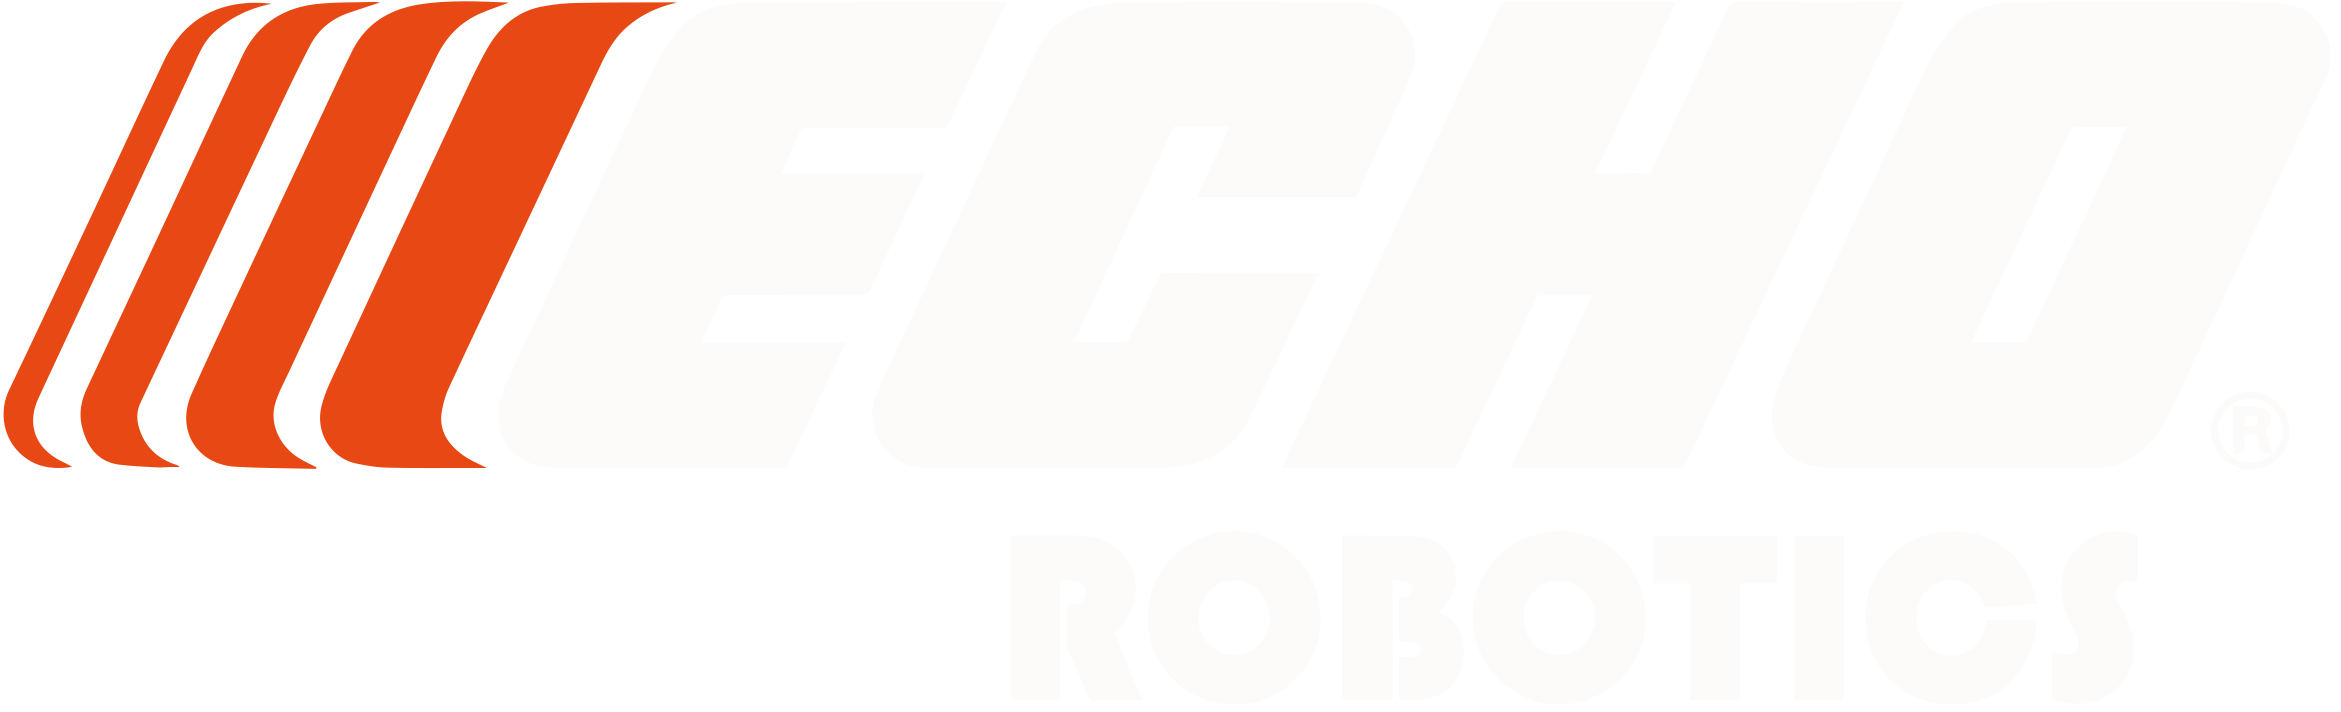 ECHO Robotics Webinare